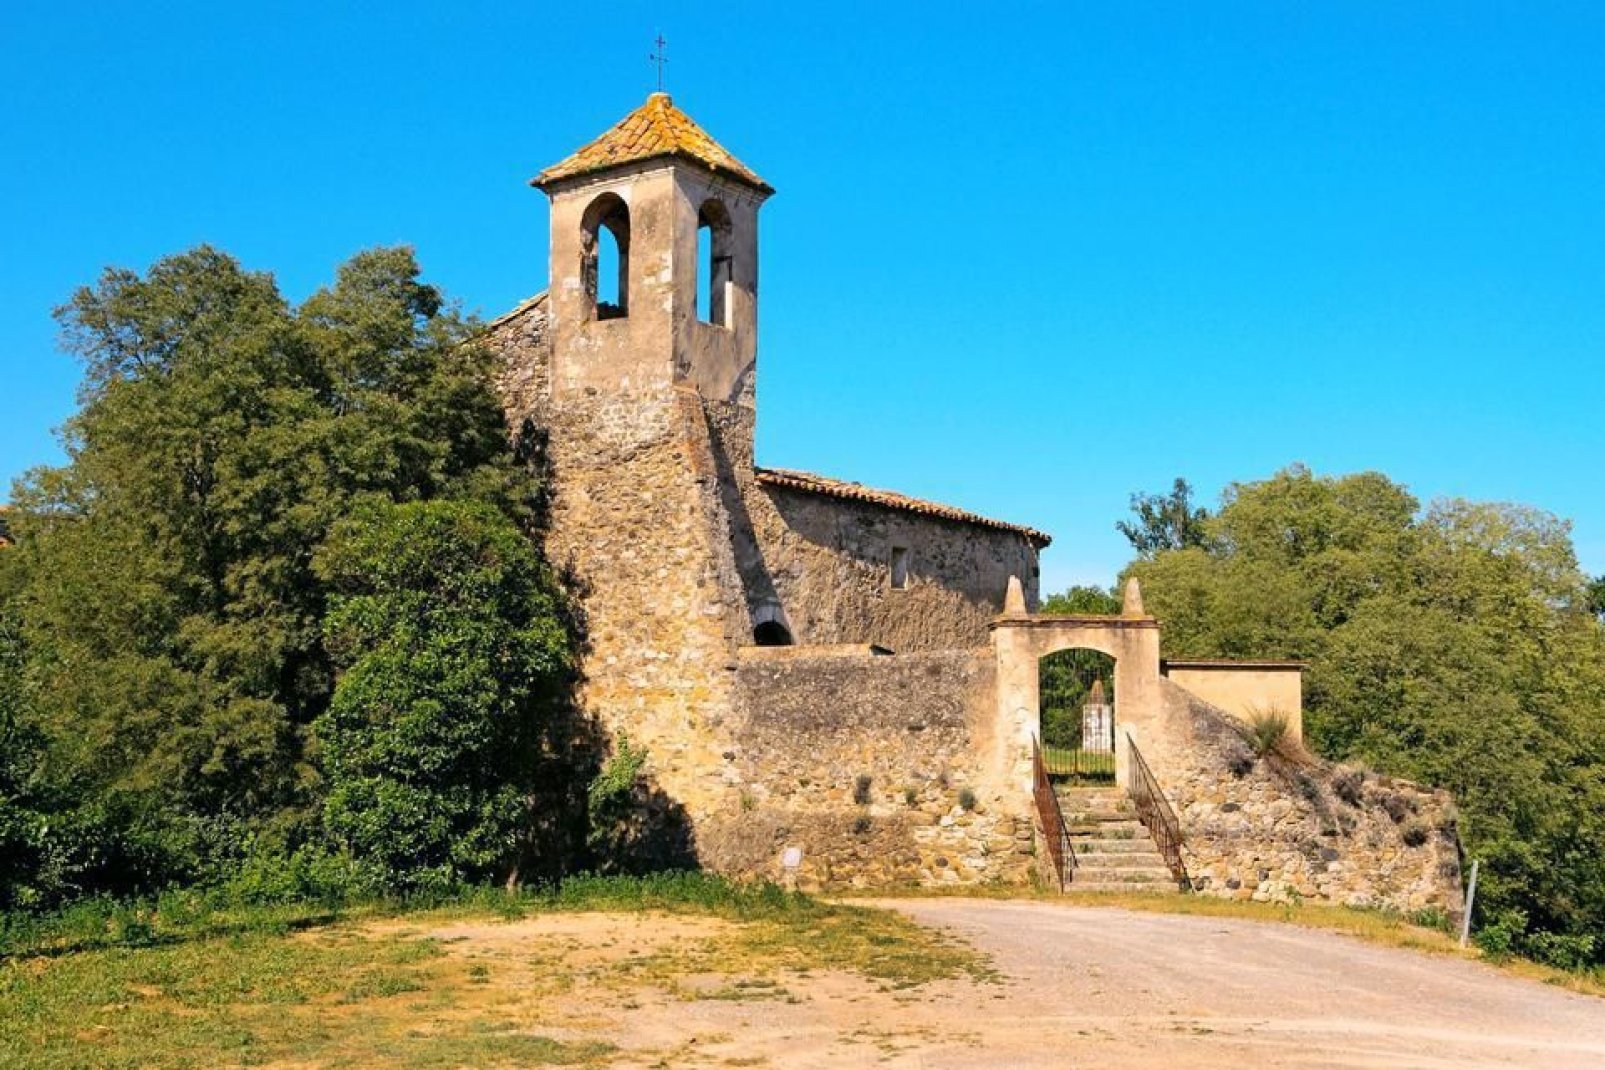 on découvre le quartier juif, l'abbaye Sant Pere consacrée en 1003 par Taillefer, ou encore l'église paroissiale Sant Vicenç et les ruines de Santa Maria de Besalú.